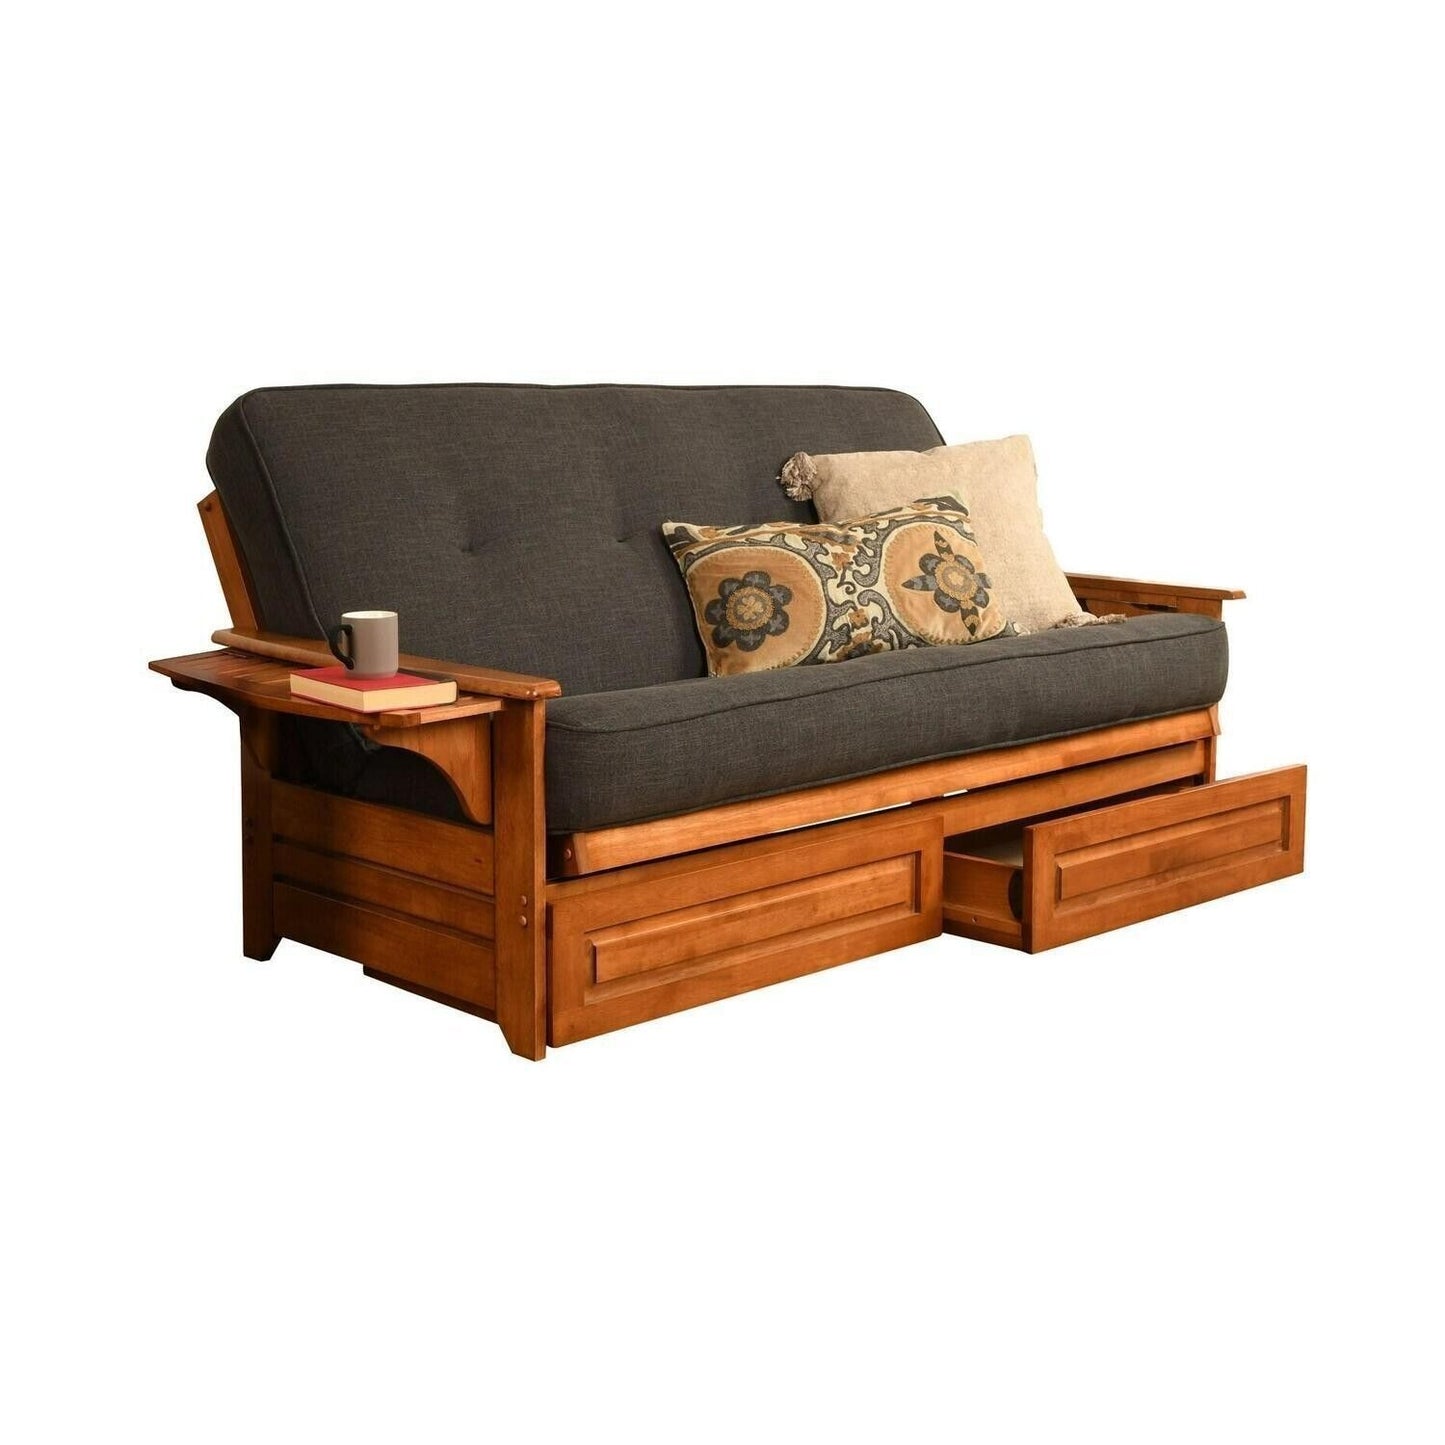 Futon Bed Set - Full Sz Solid Wood Futon w/Cotton Mattress & Storage - Dark Grey